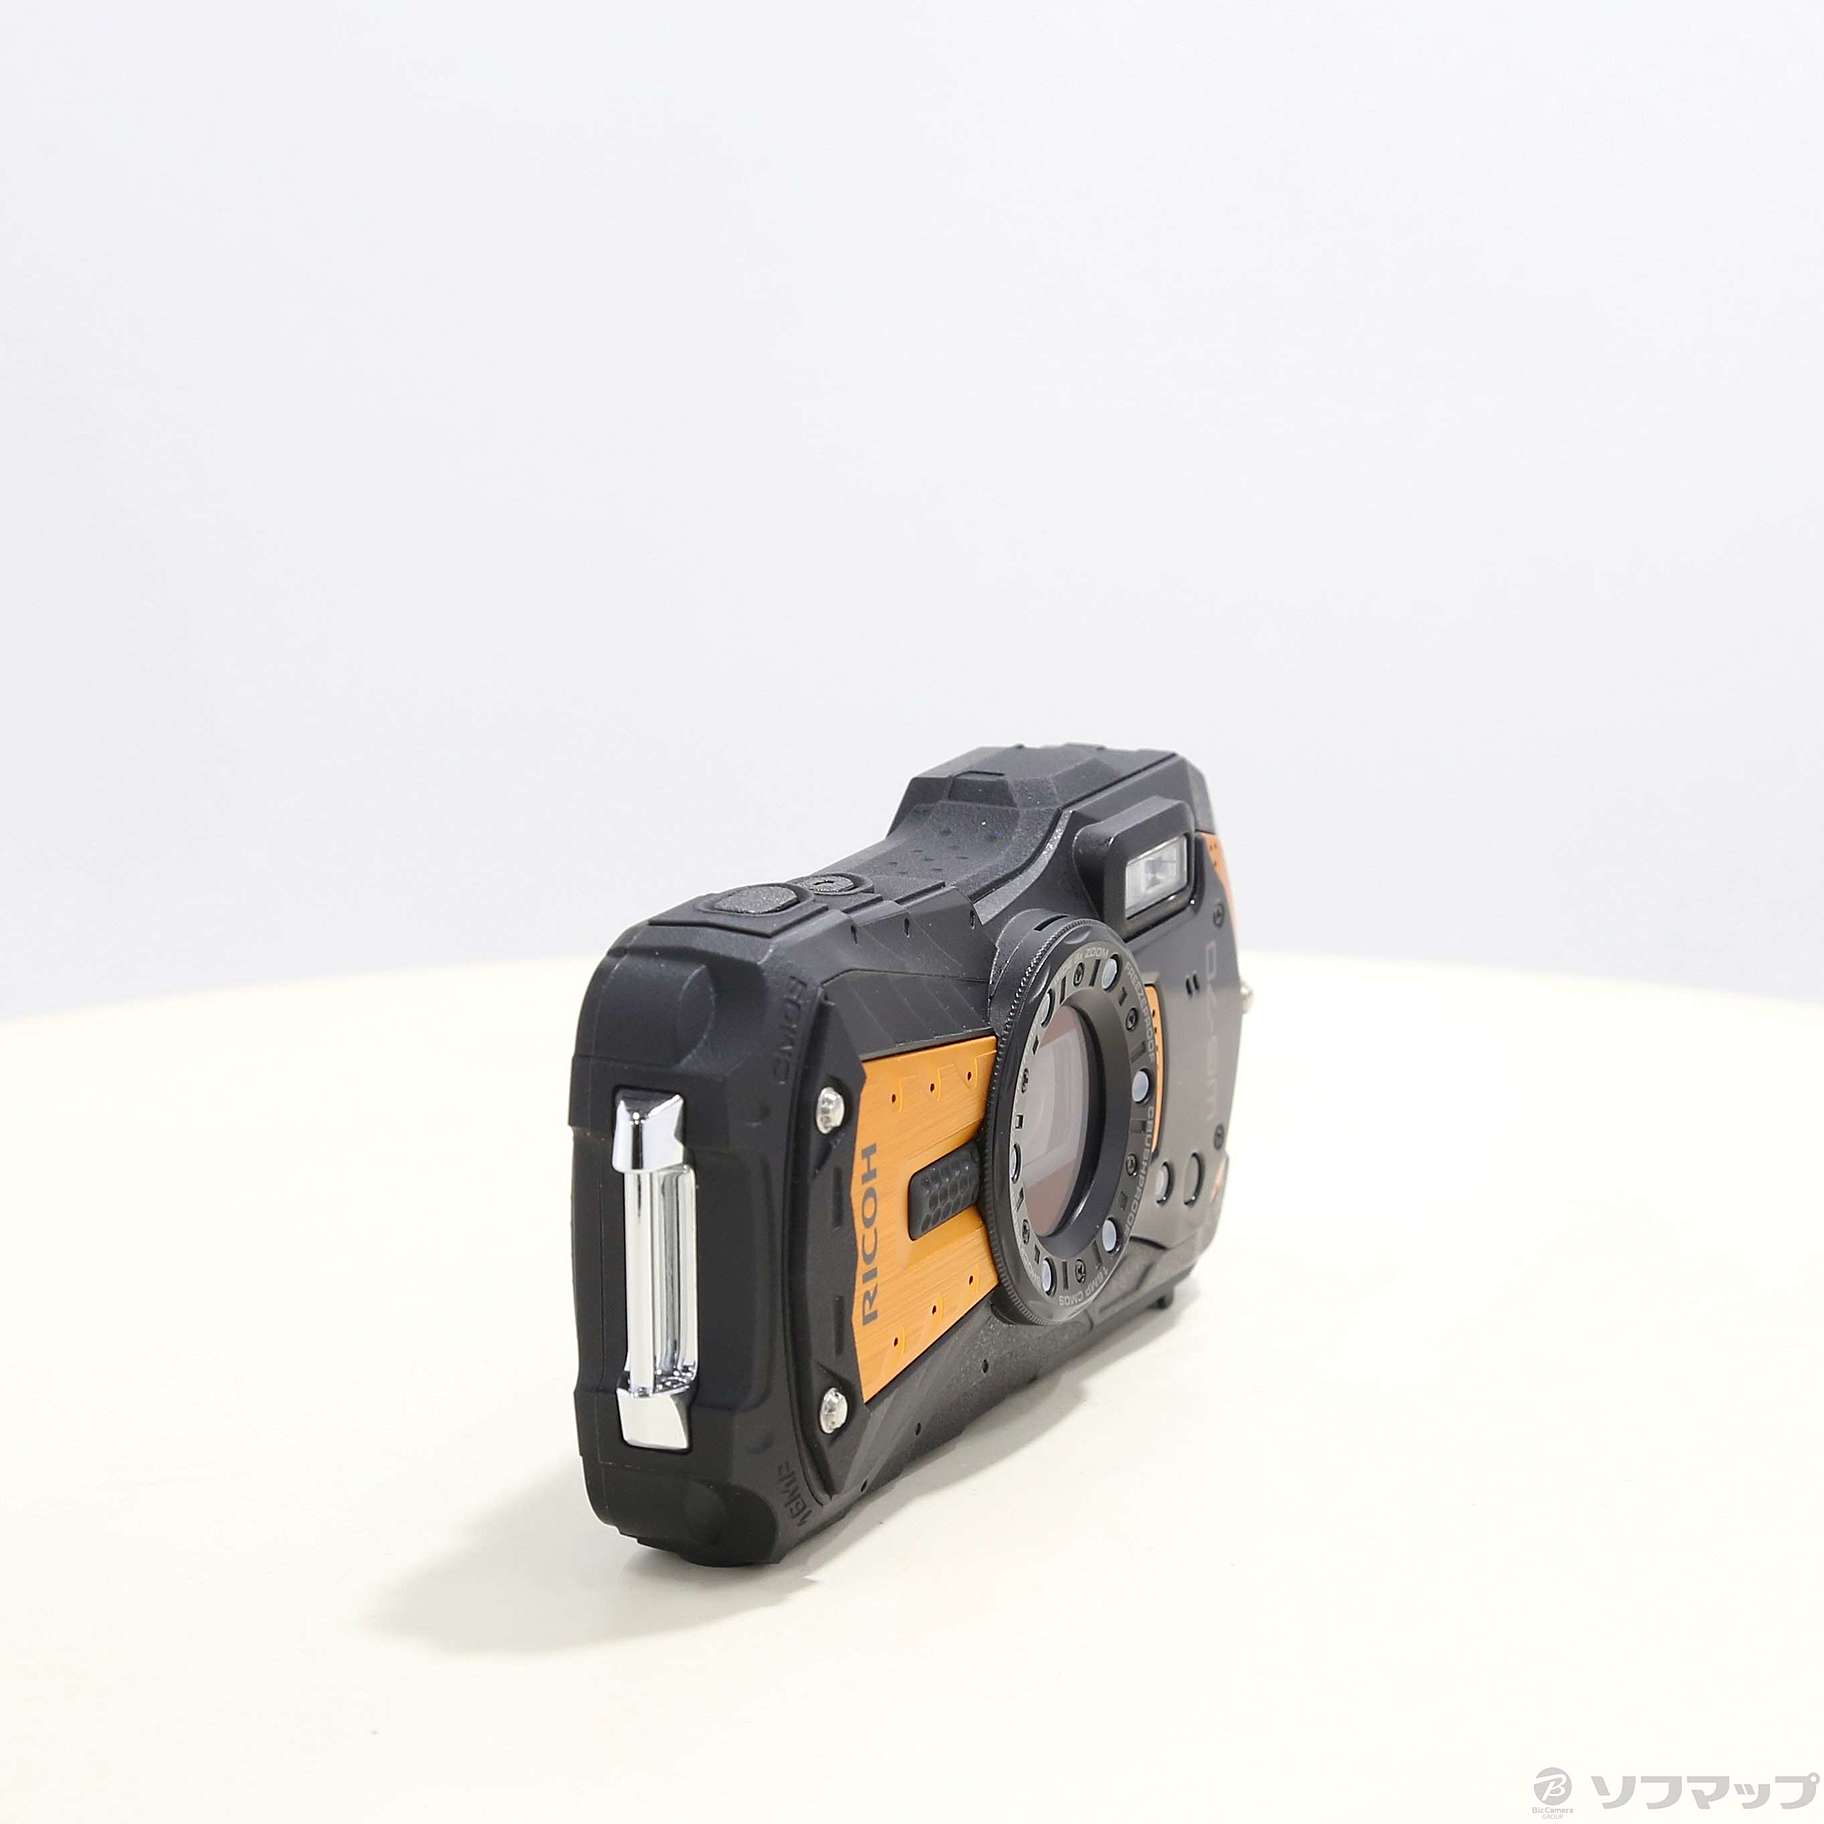 85％以上節約 リコーイメージング 防水デジタルカメラ WG-70 オレンジ WG-70OR